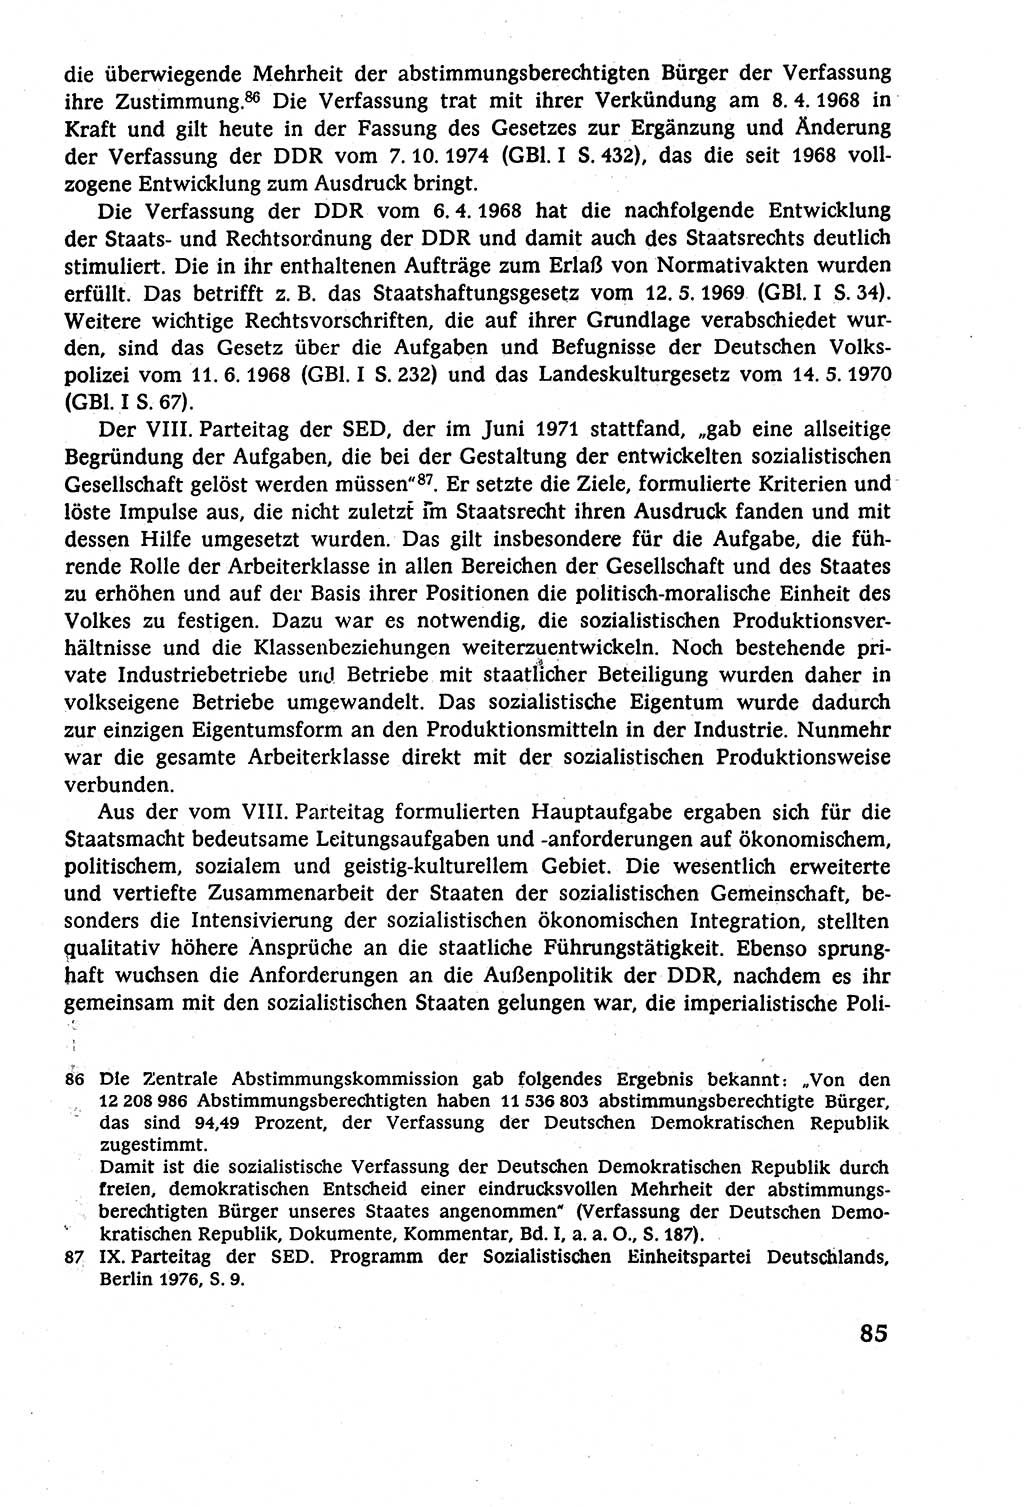 Staatsrecht der DDR (Deutsche Demokratische Republik), Lehrbuch 1977, Seite 85 (St.-R. DDR Lb. 1977, S. 85)